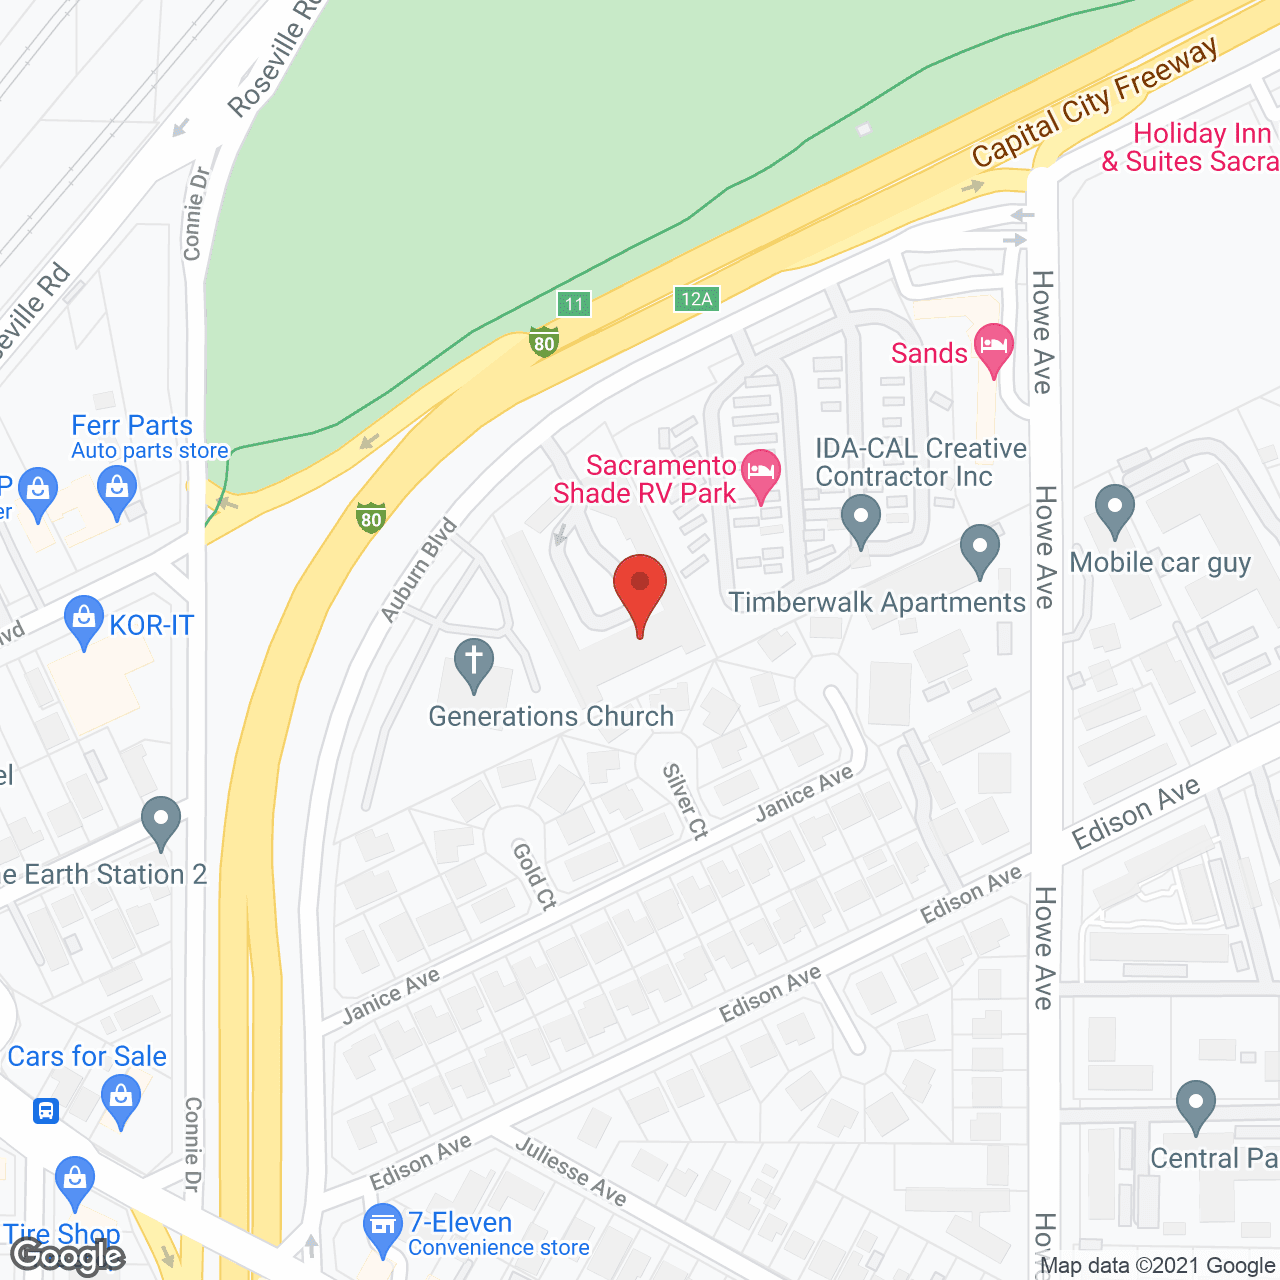 Auburn Square Senior Residence in google map